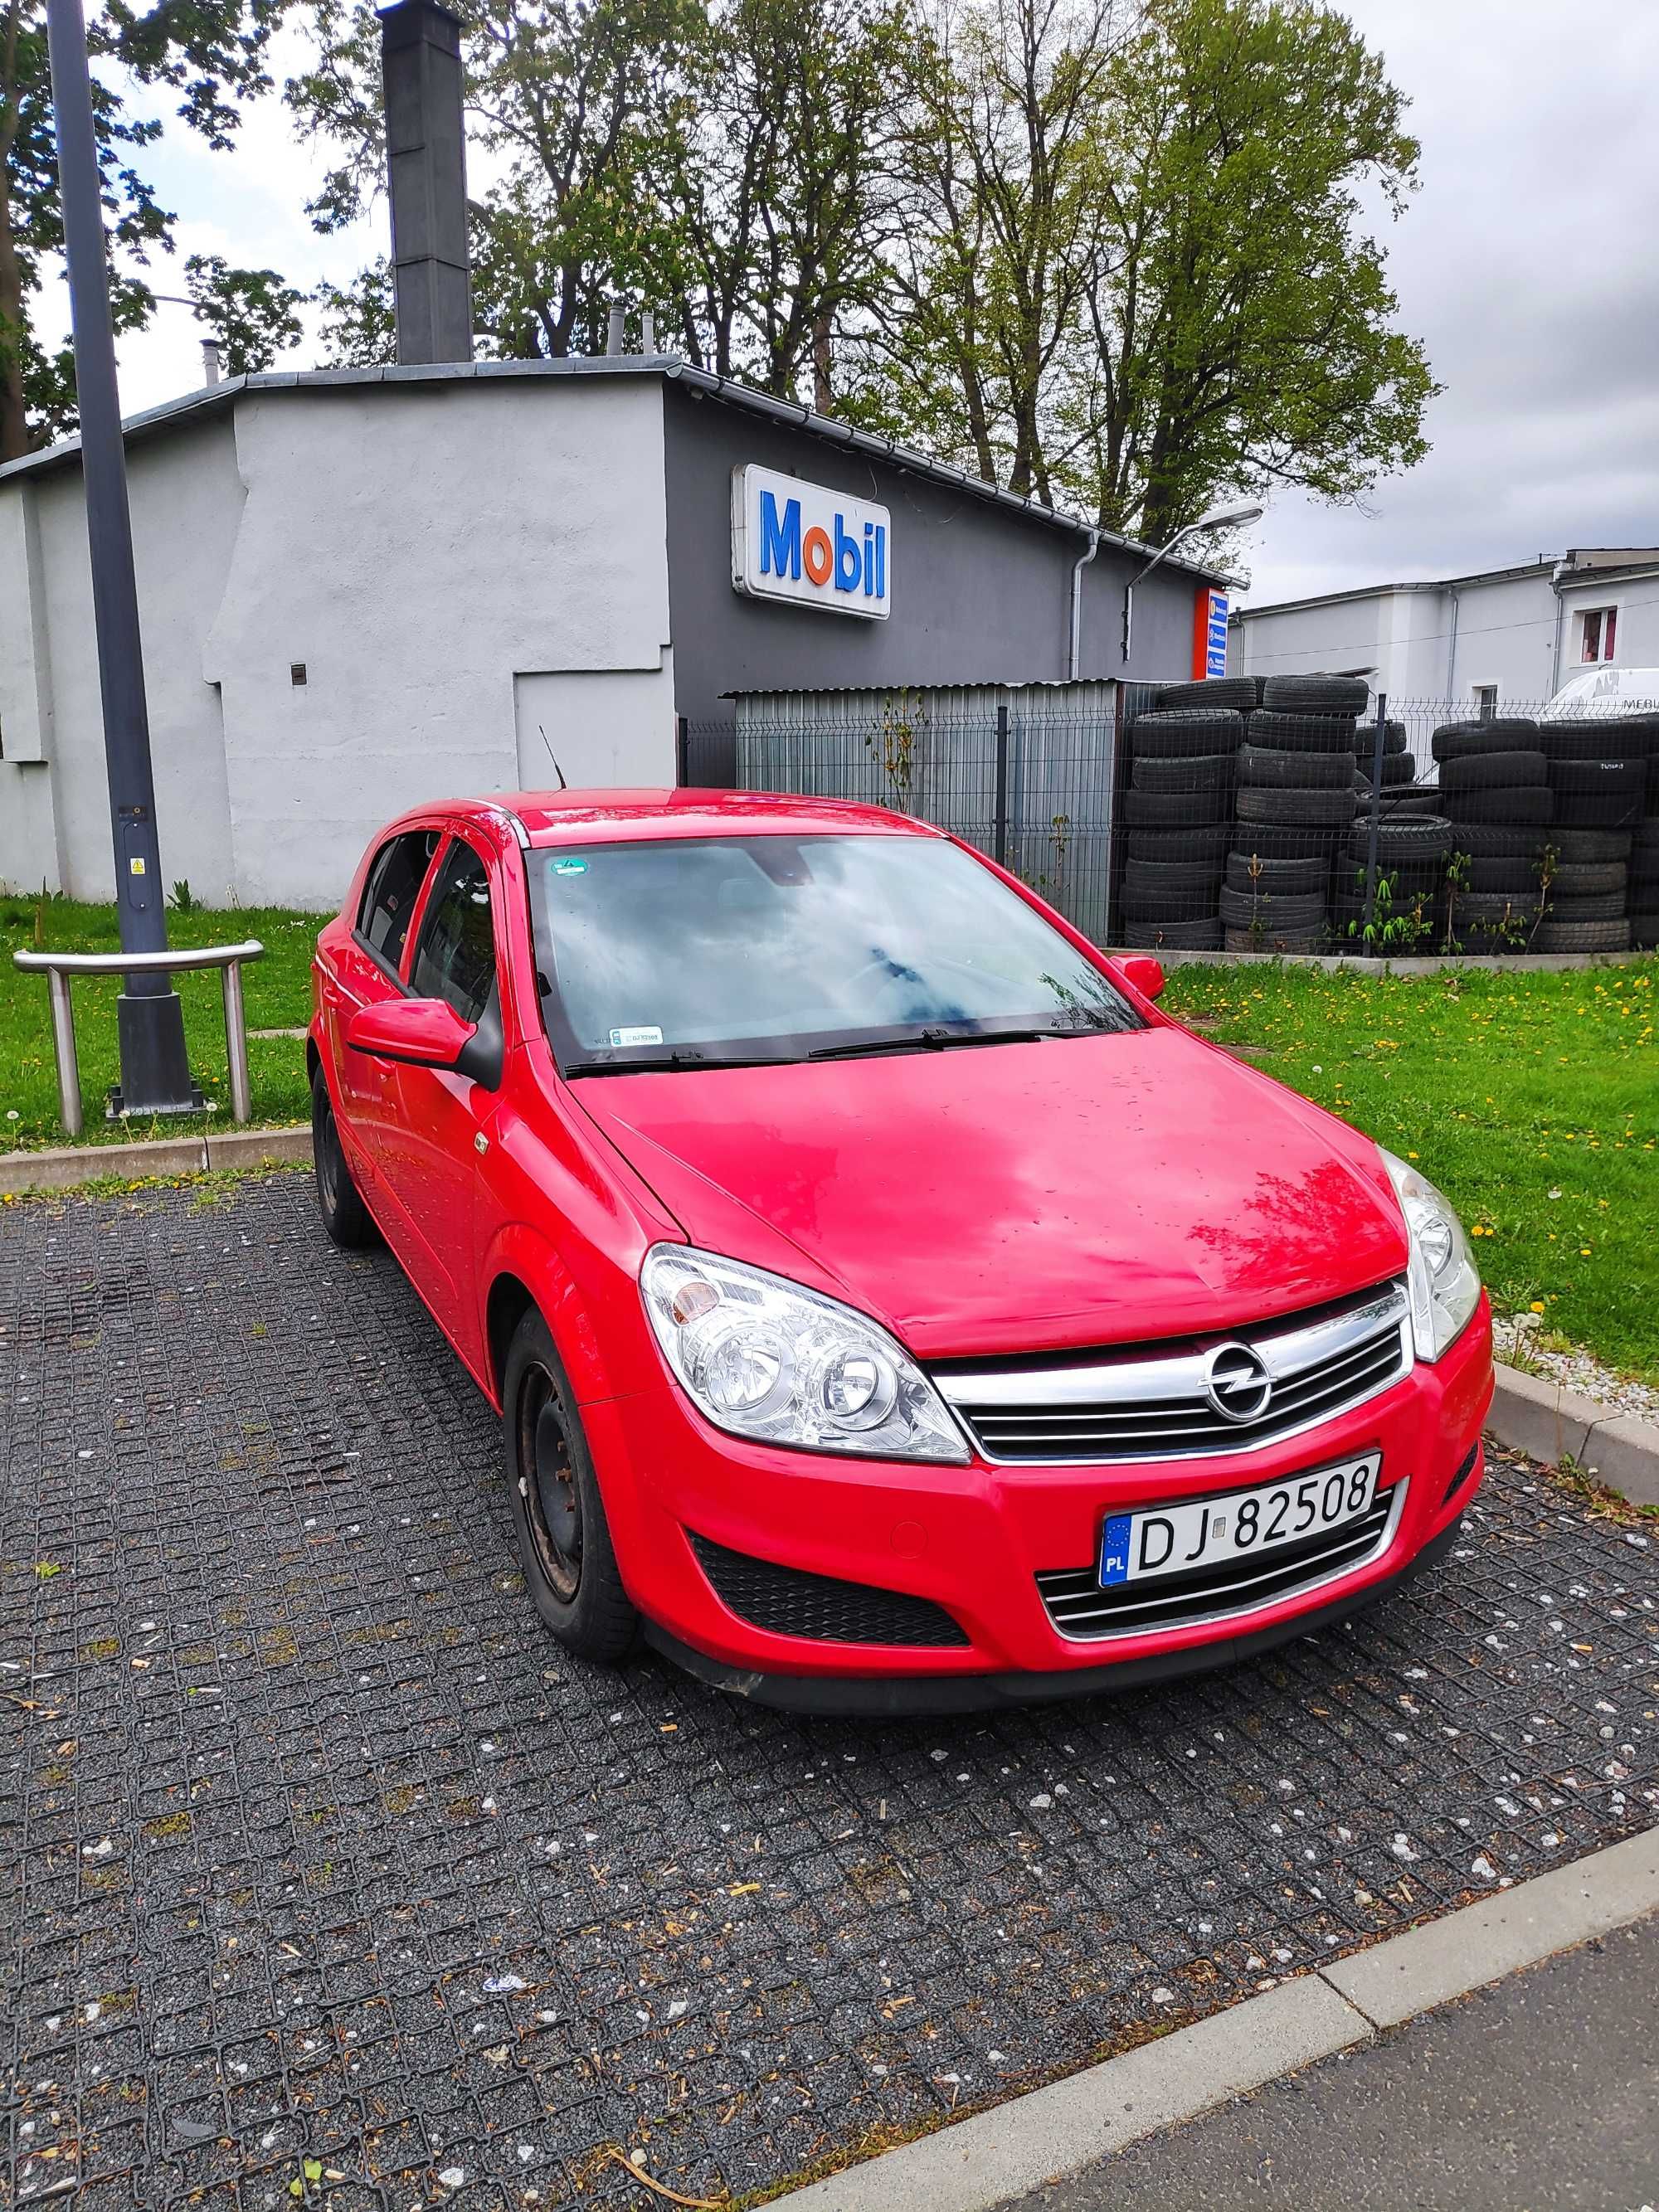 Sprzedam: Opel Astra H 1.6b z 2007 roku